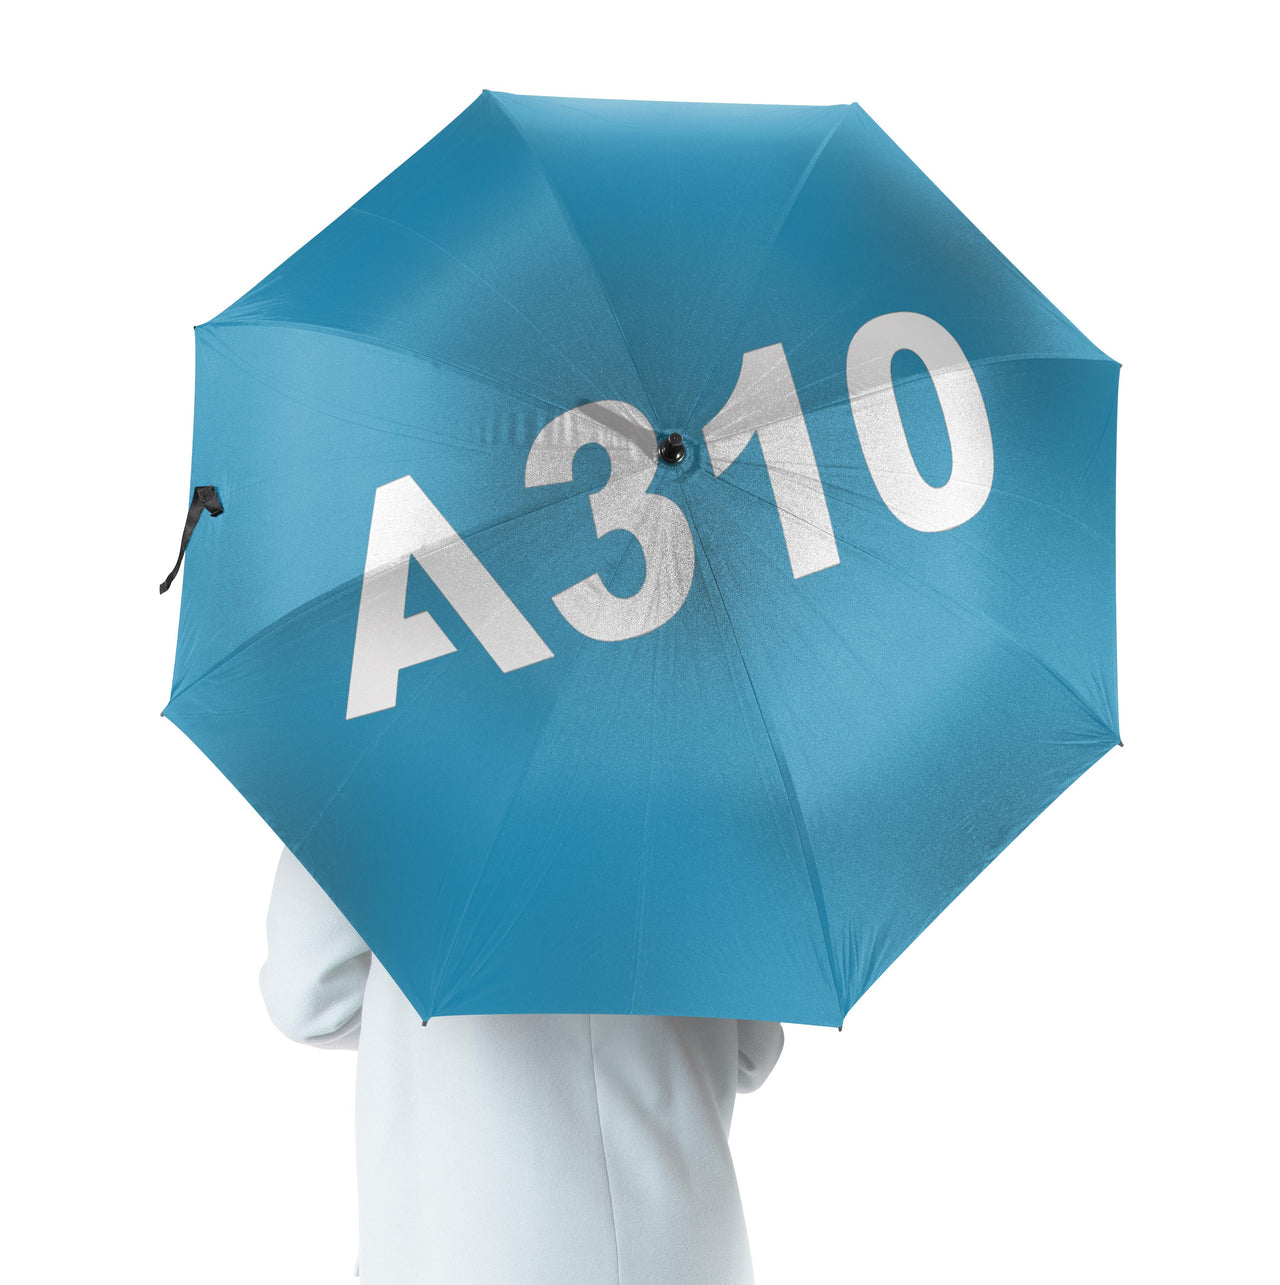 A310 Flat Text Designed Umbrella